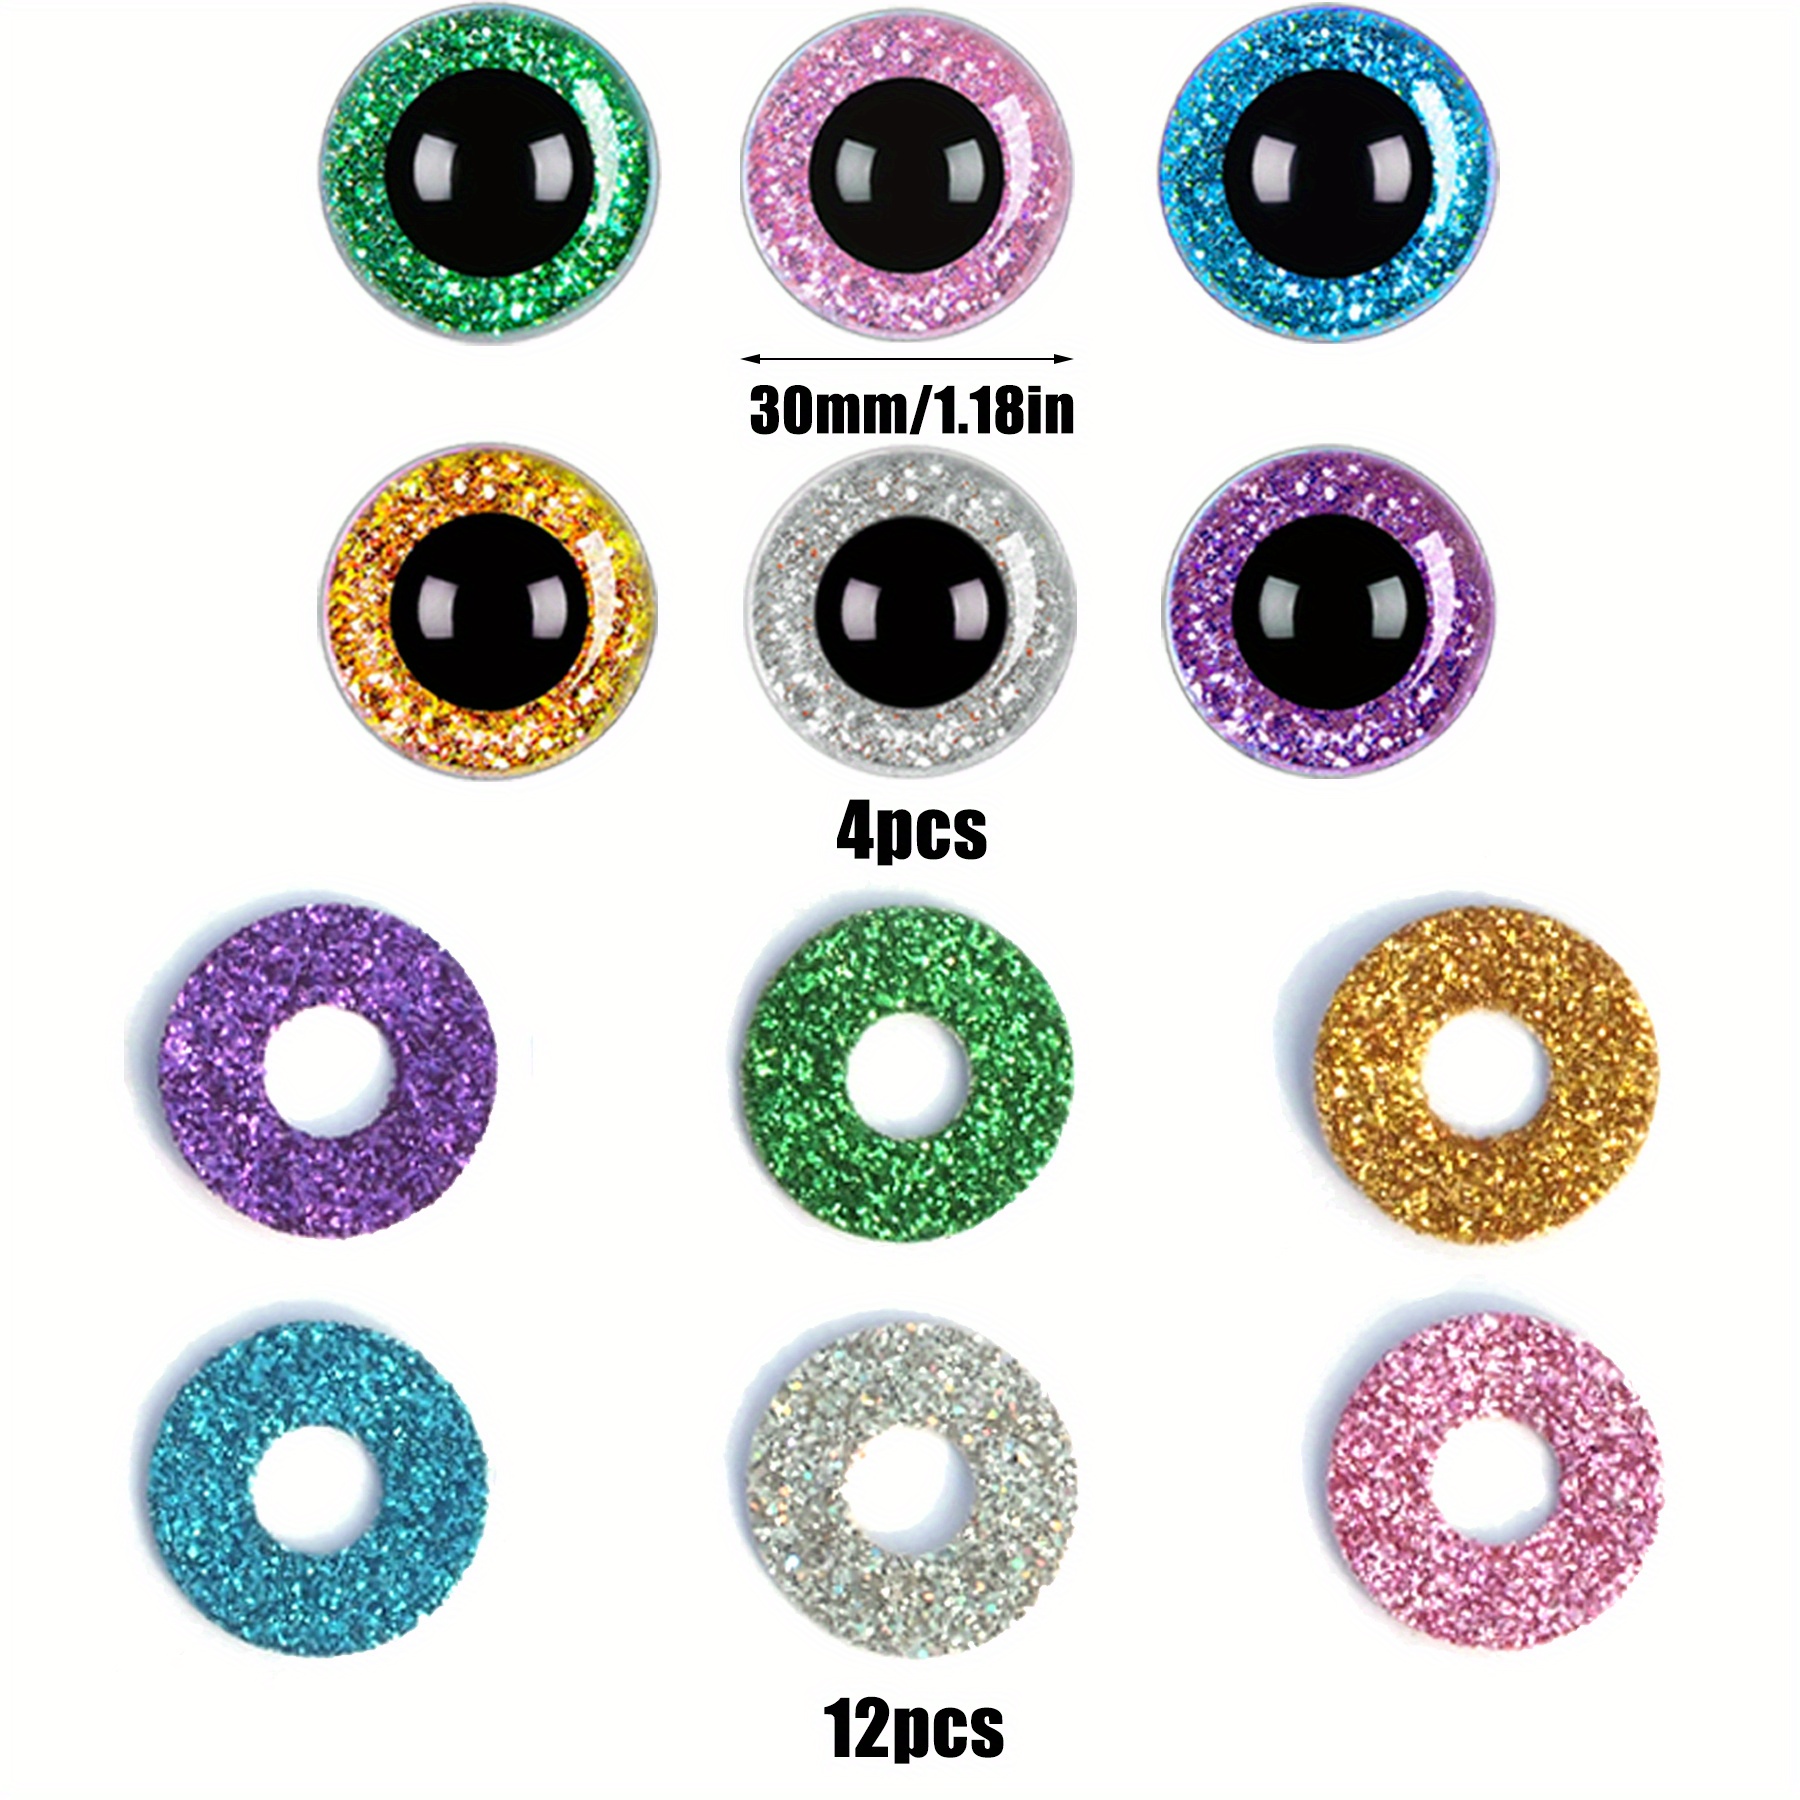 Safety Glitter Eyes, Eyes Toys 40mm, Eye Toys 30mm